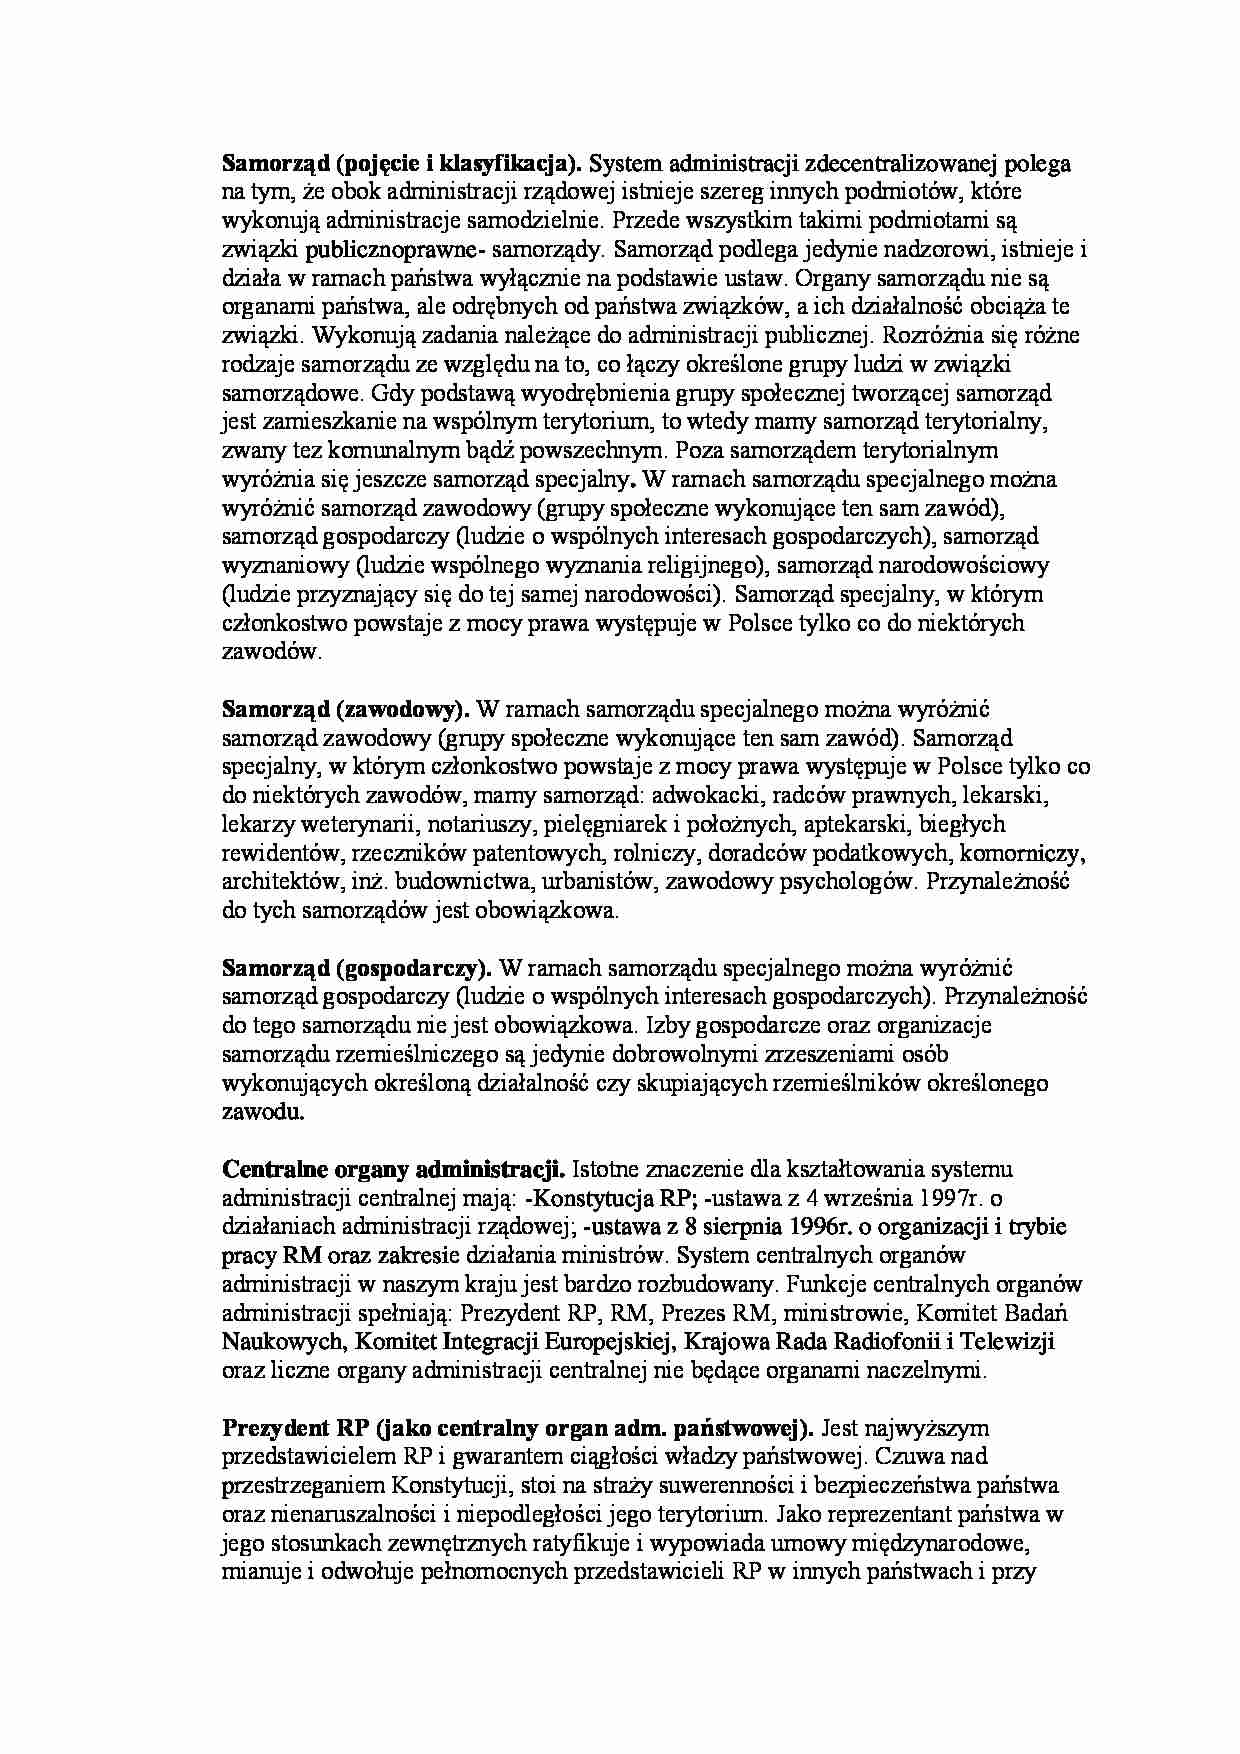 Samorząd - pojęcie i klasyfikacja - strona 1